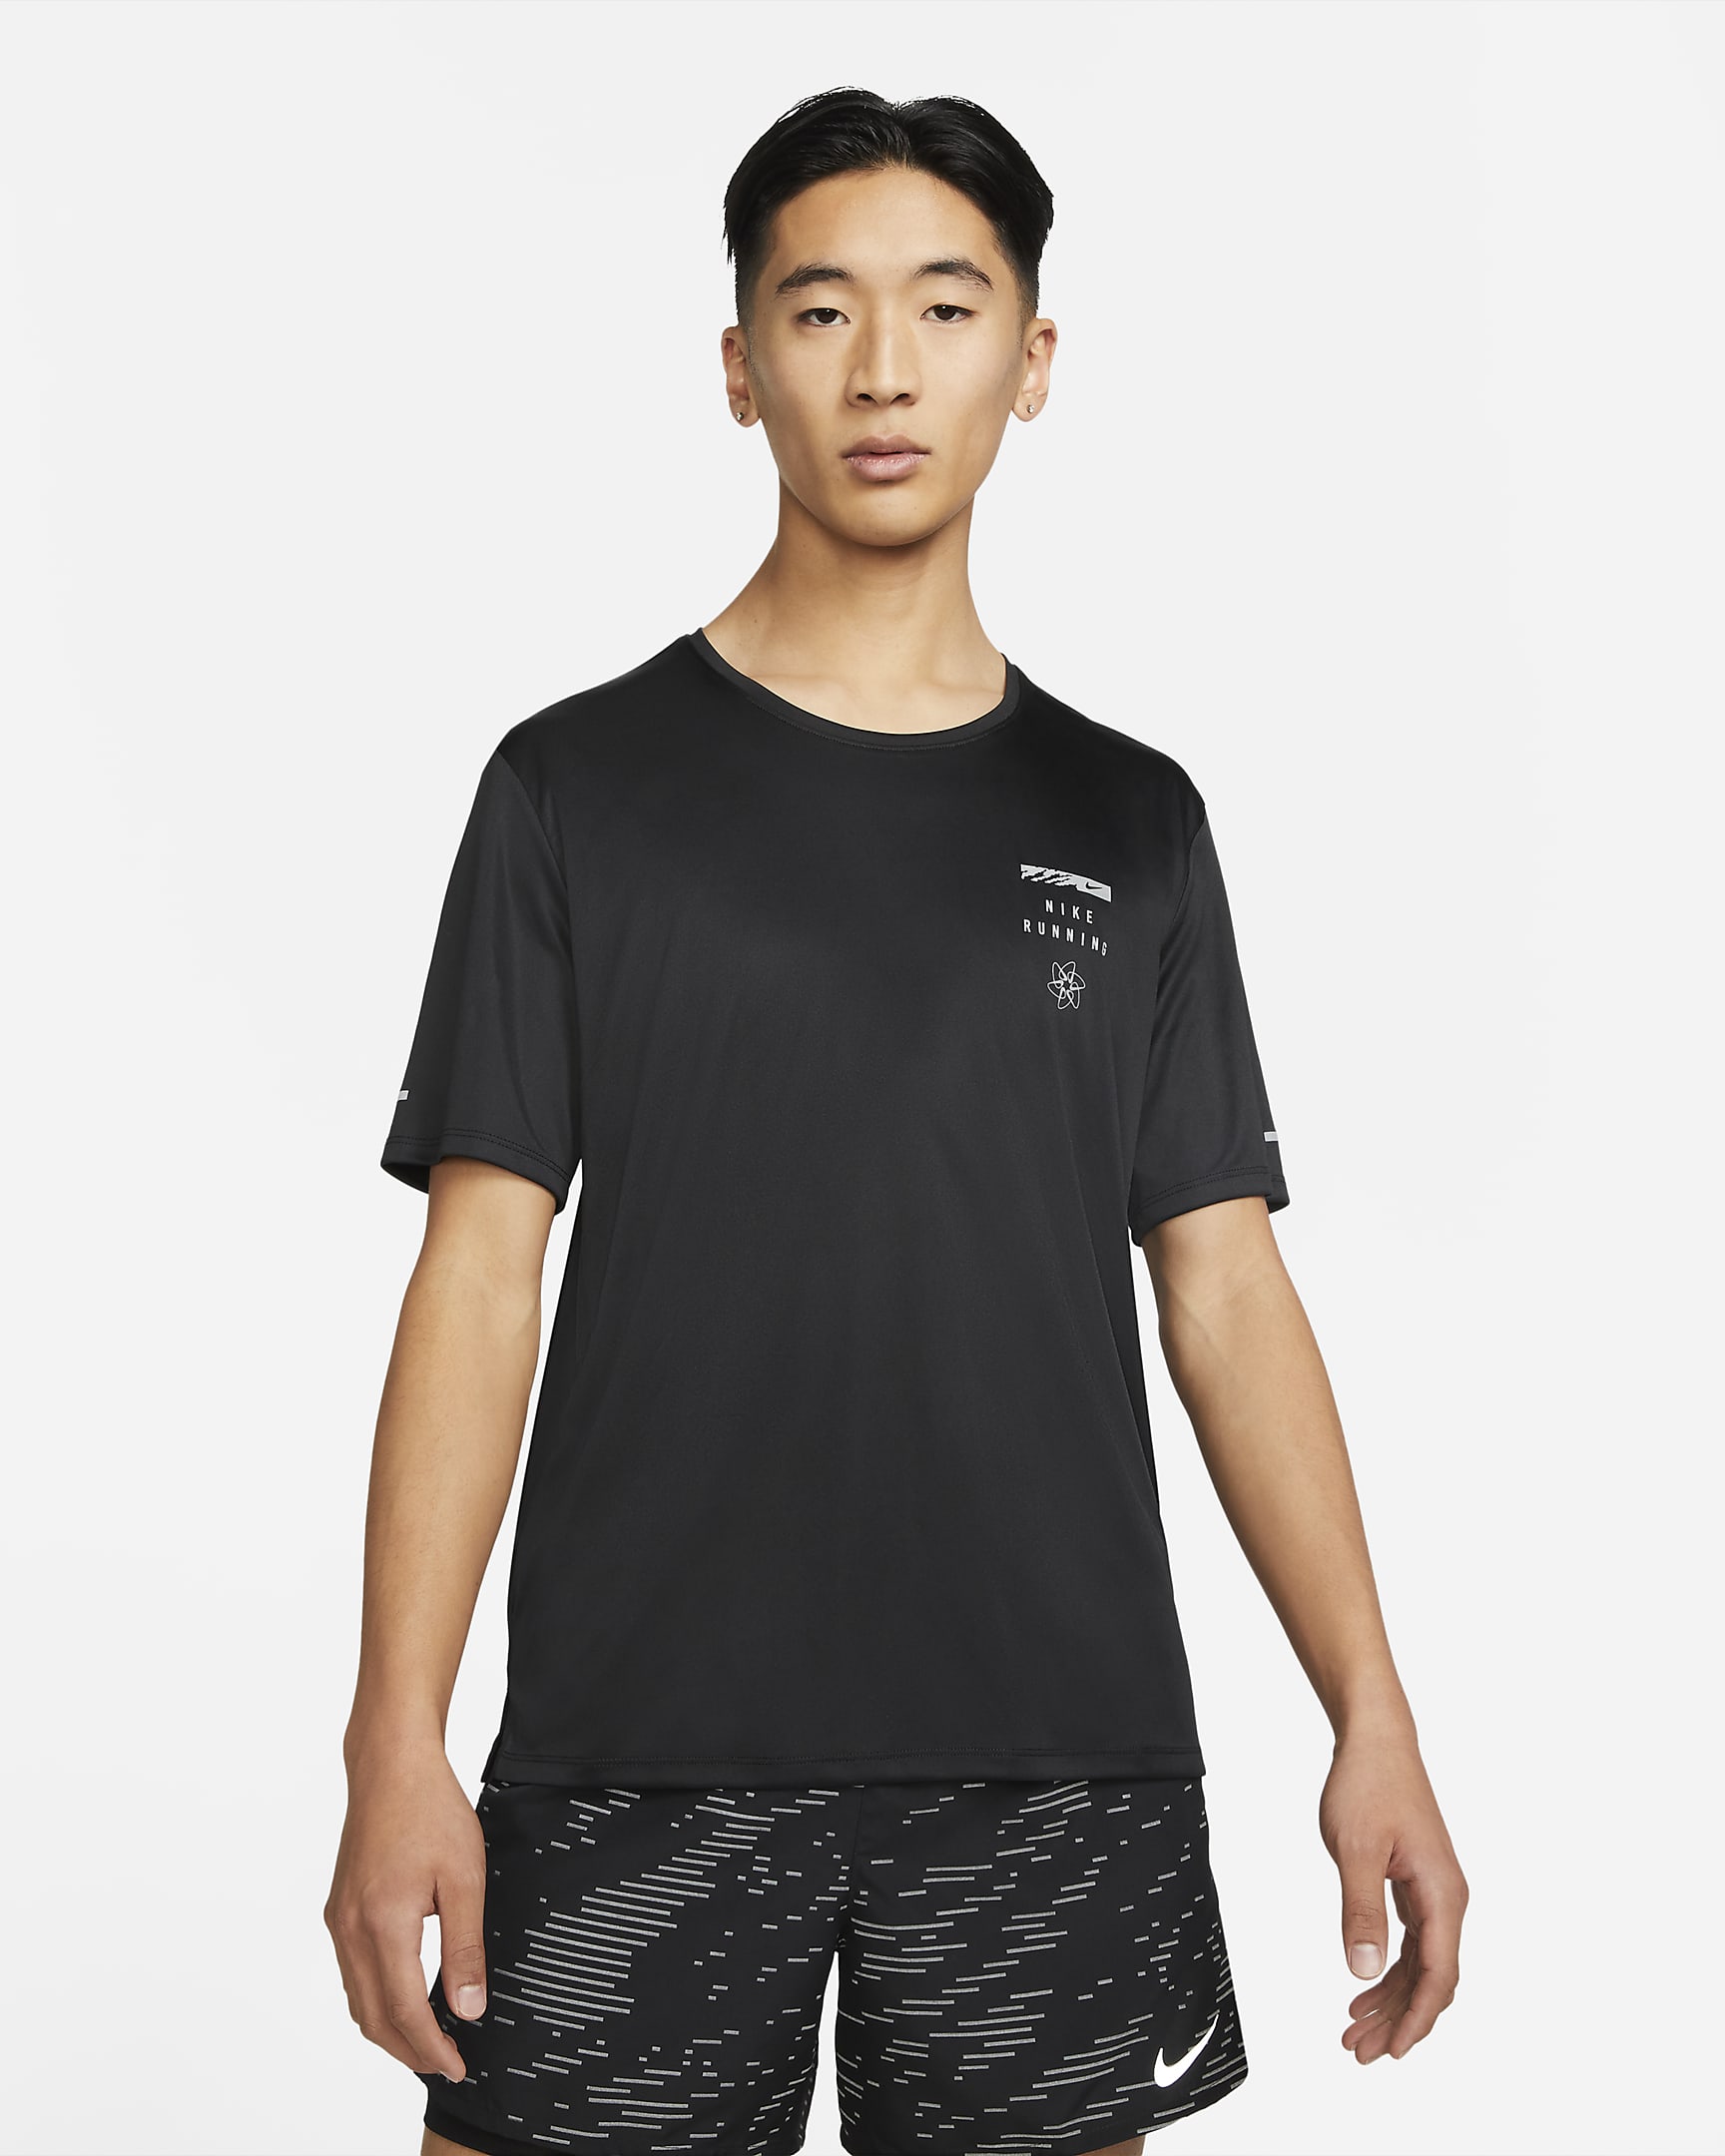 Nike Dri-FIT UV Run Division Miler Men's Graphic Short-Sleeve Top. Nike MY